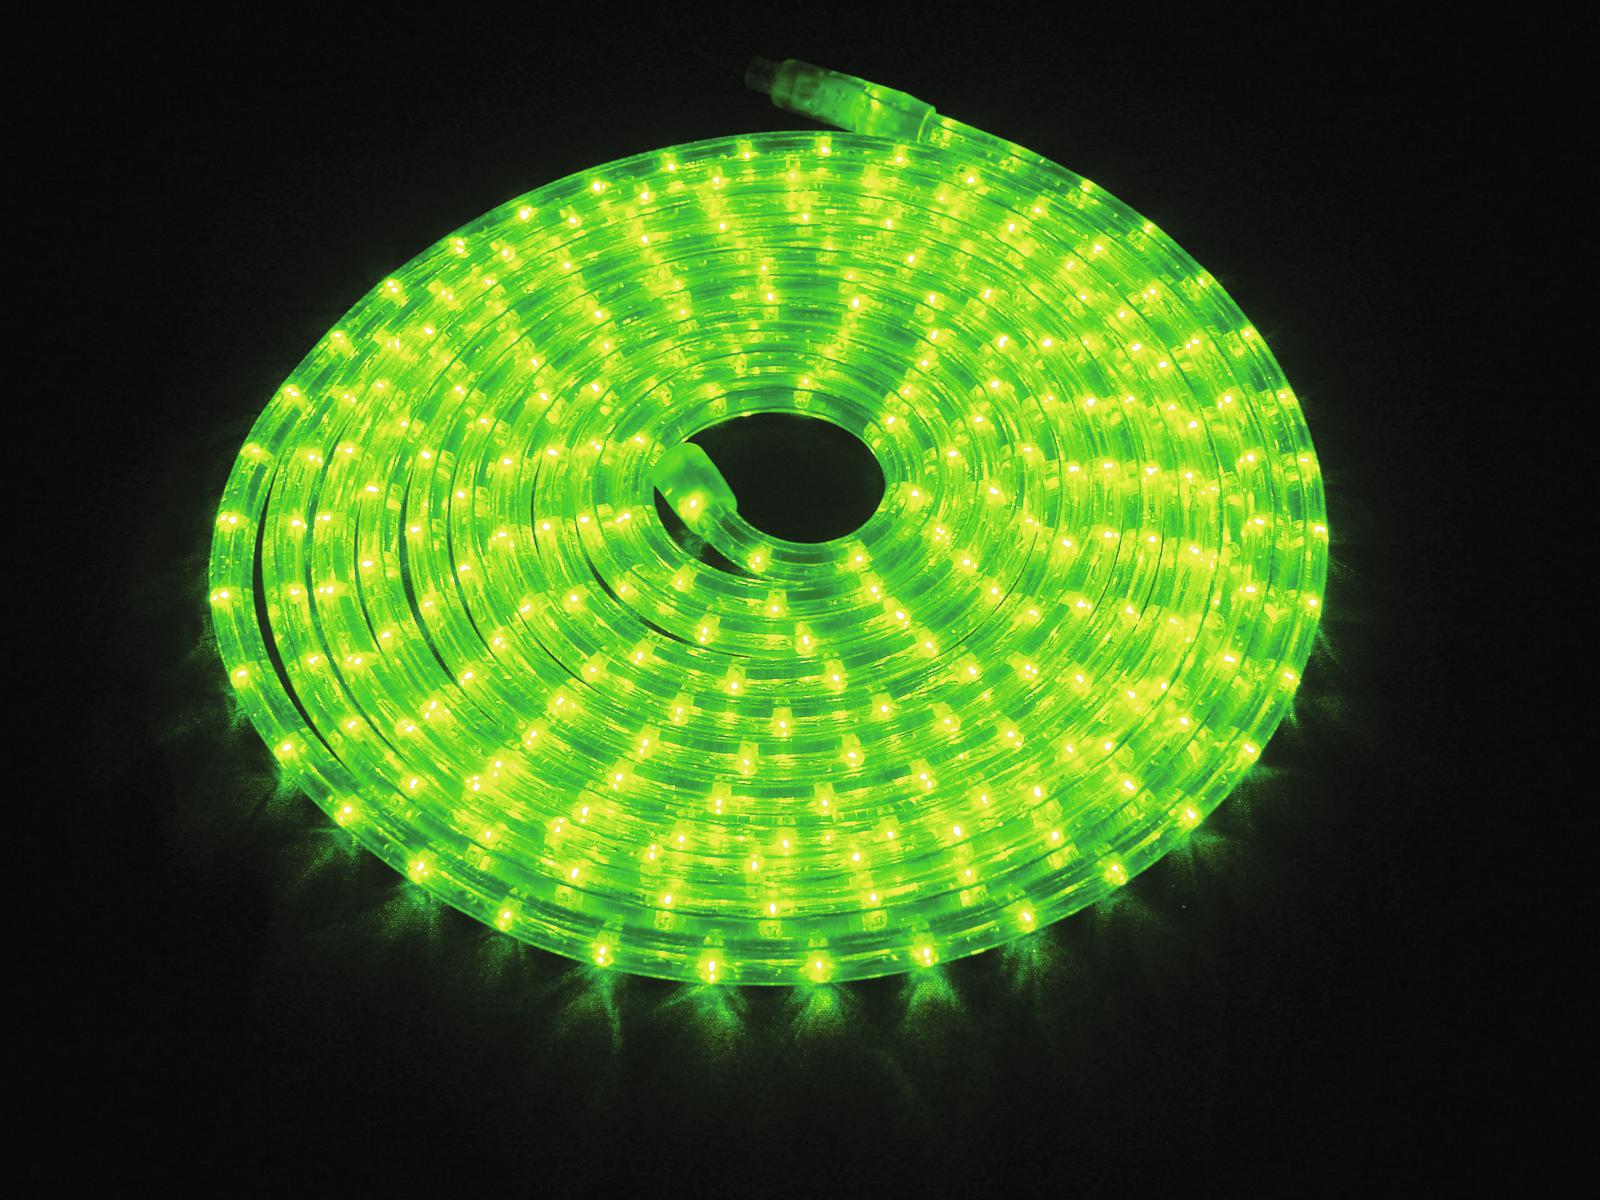 EUROLITE RUBBERLIGHT LED RL1-230V grün 9m